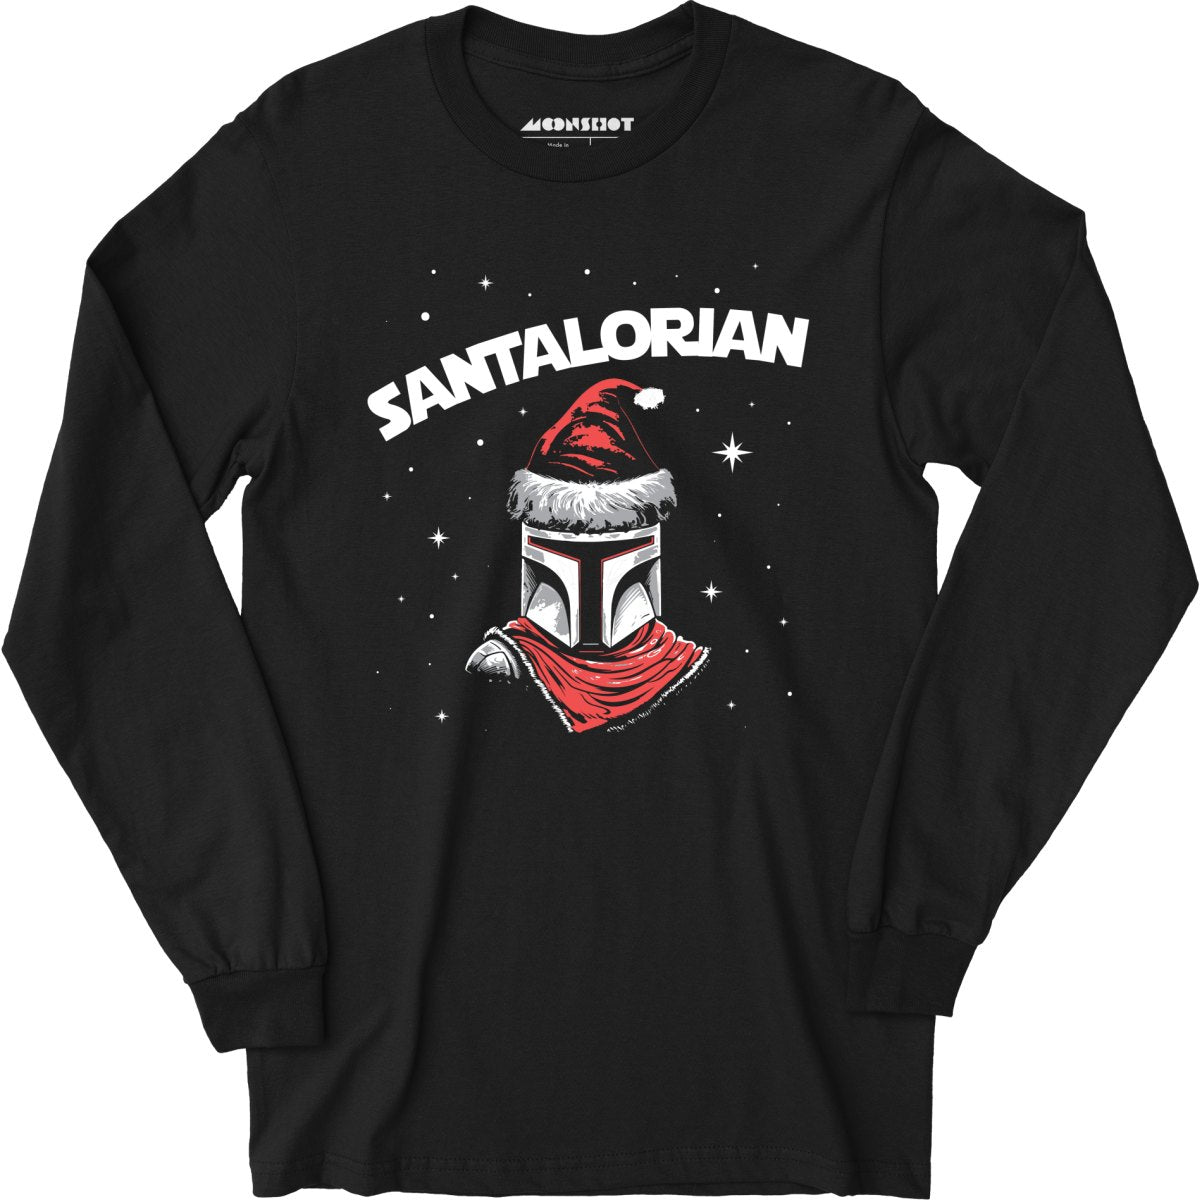 Santalorian - Long Sleeve T-Shirt